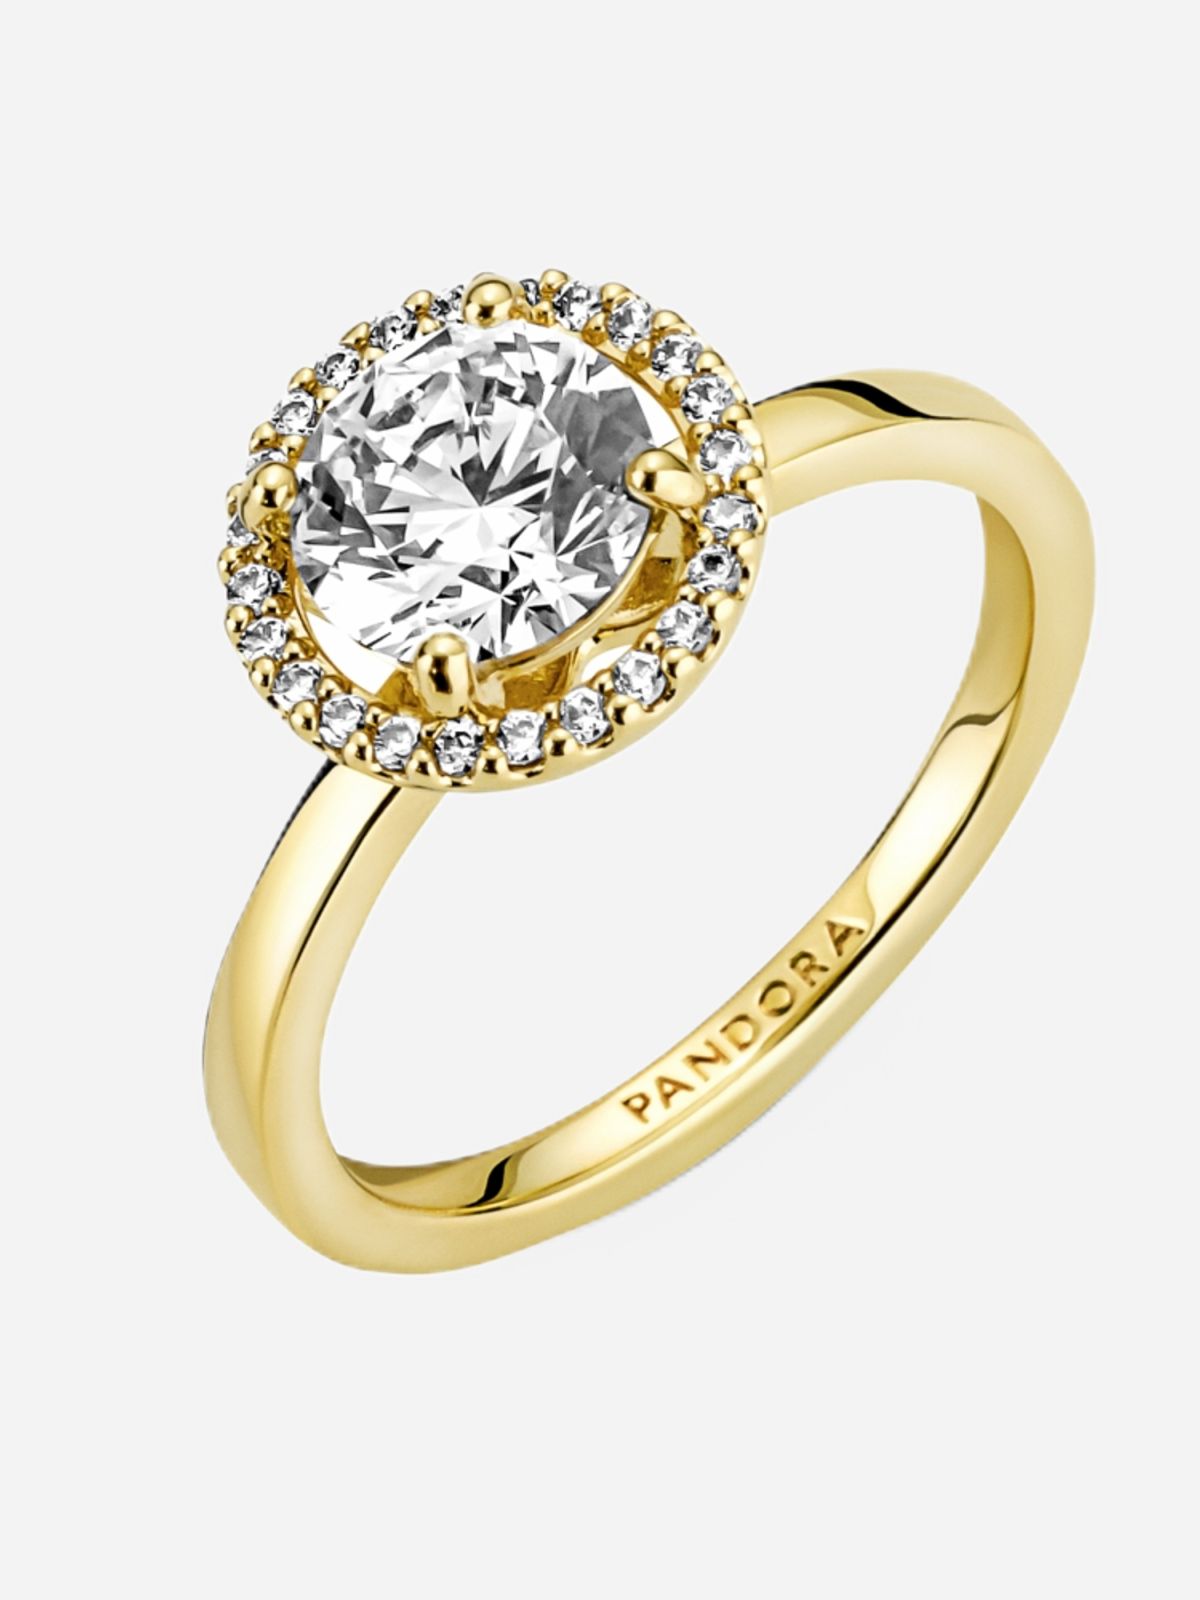  טבעת ציפוי זהב הילה נוצצת של PANDORA